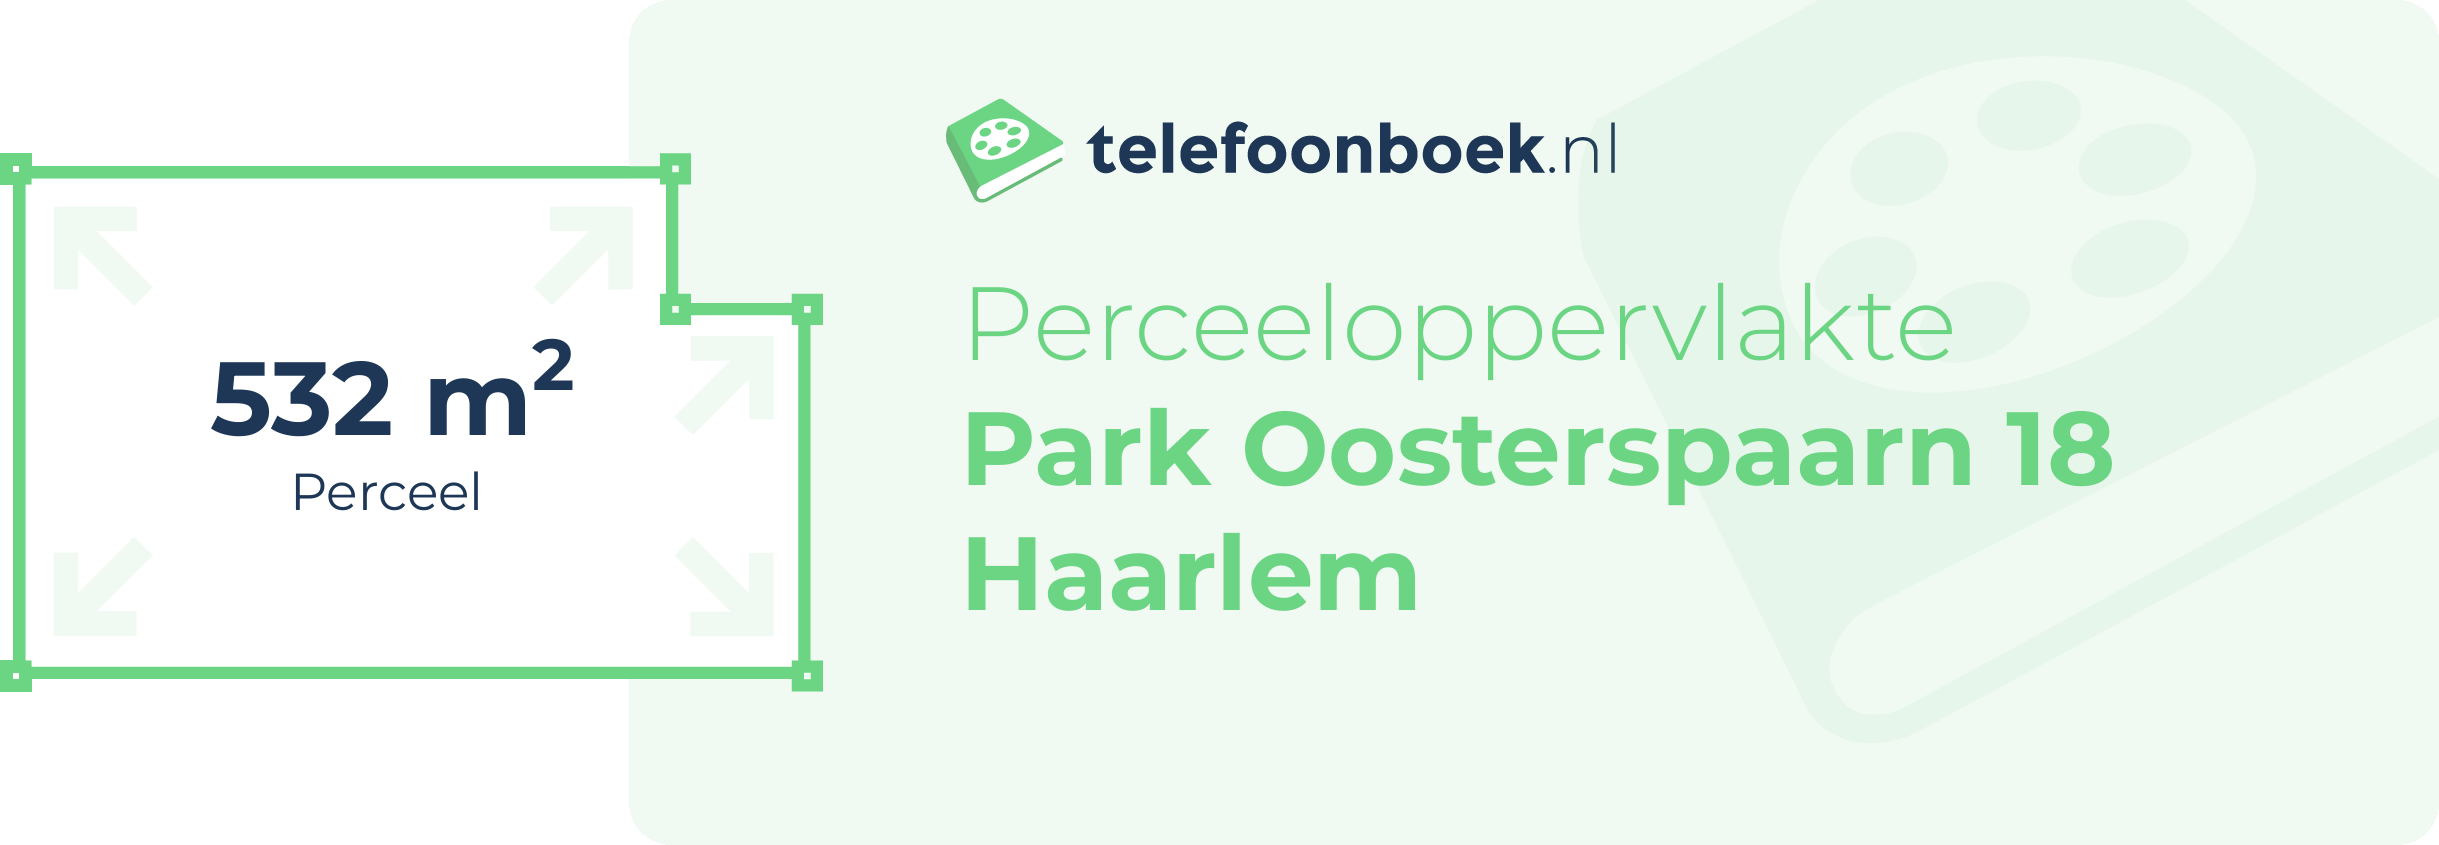 Perceeloppervlakte Park Oosterspaarn 18 Haarlem